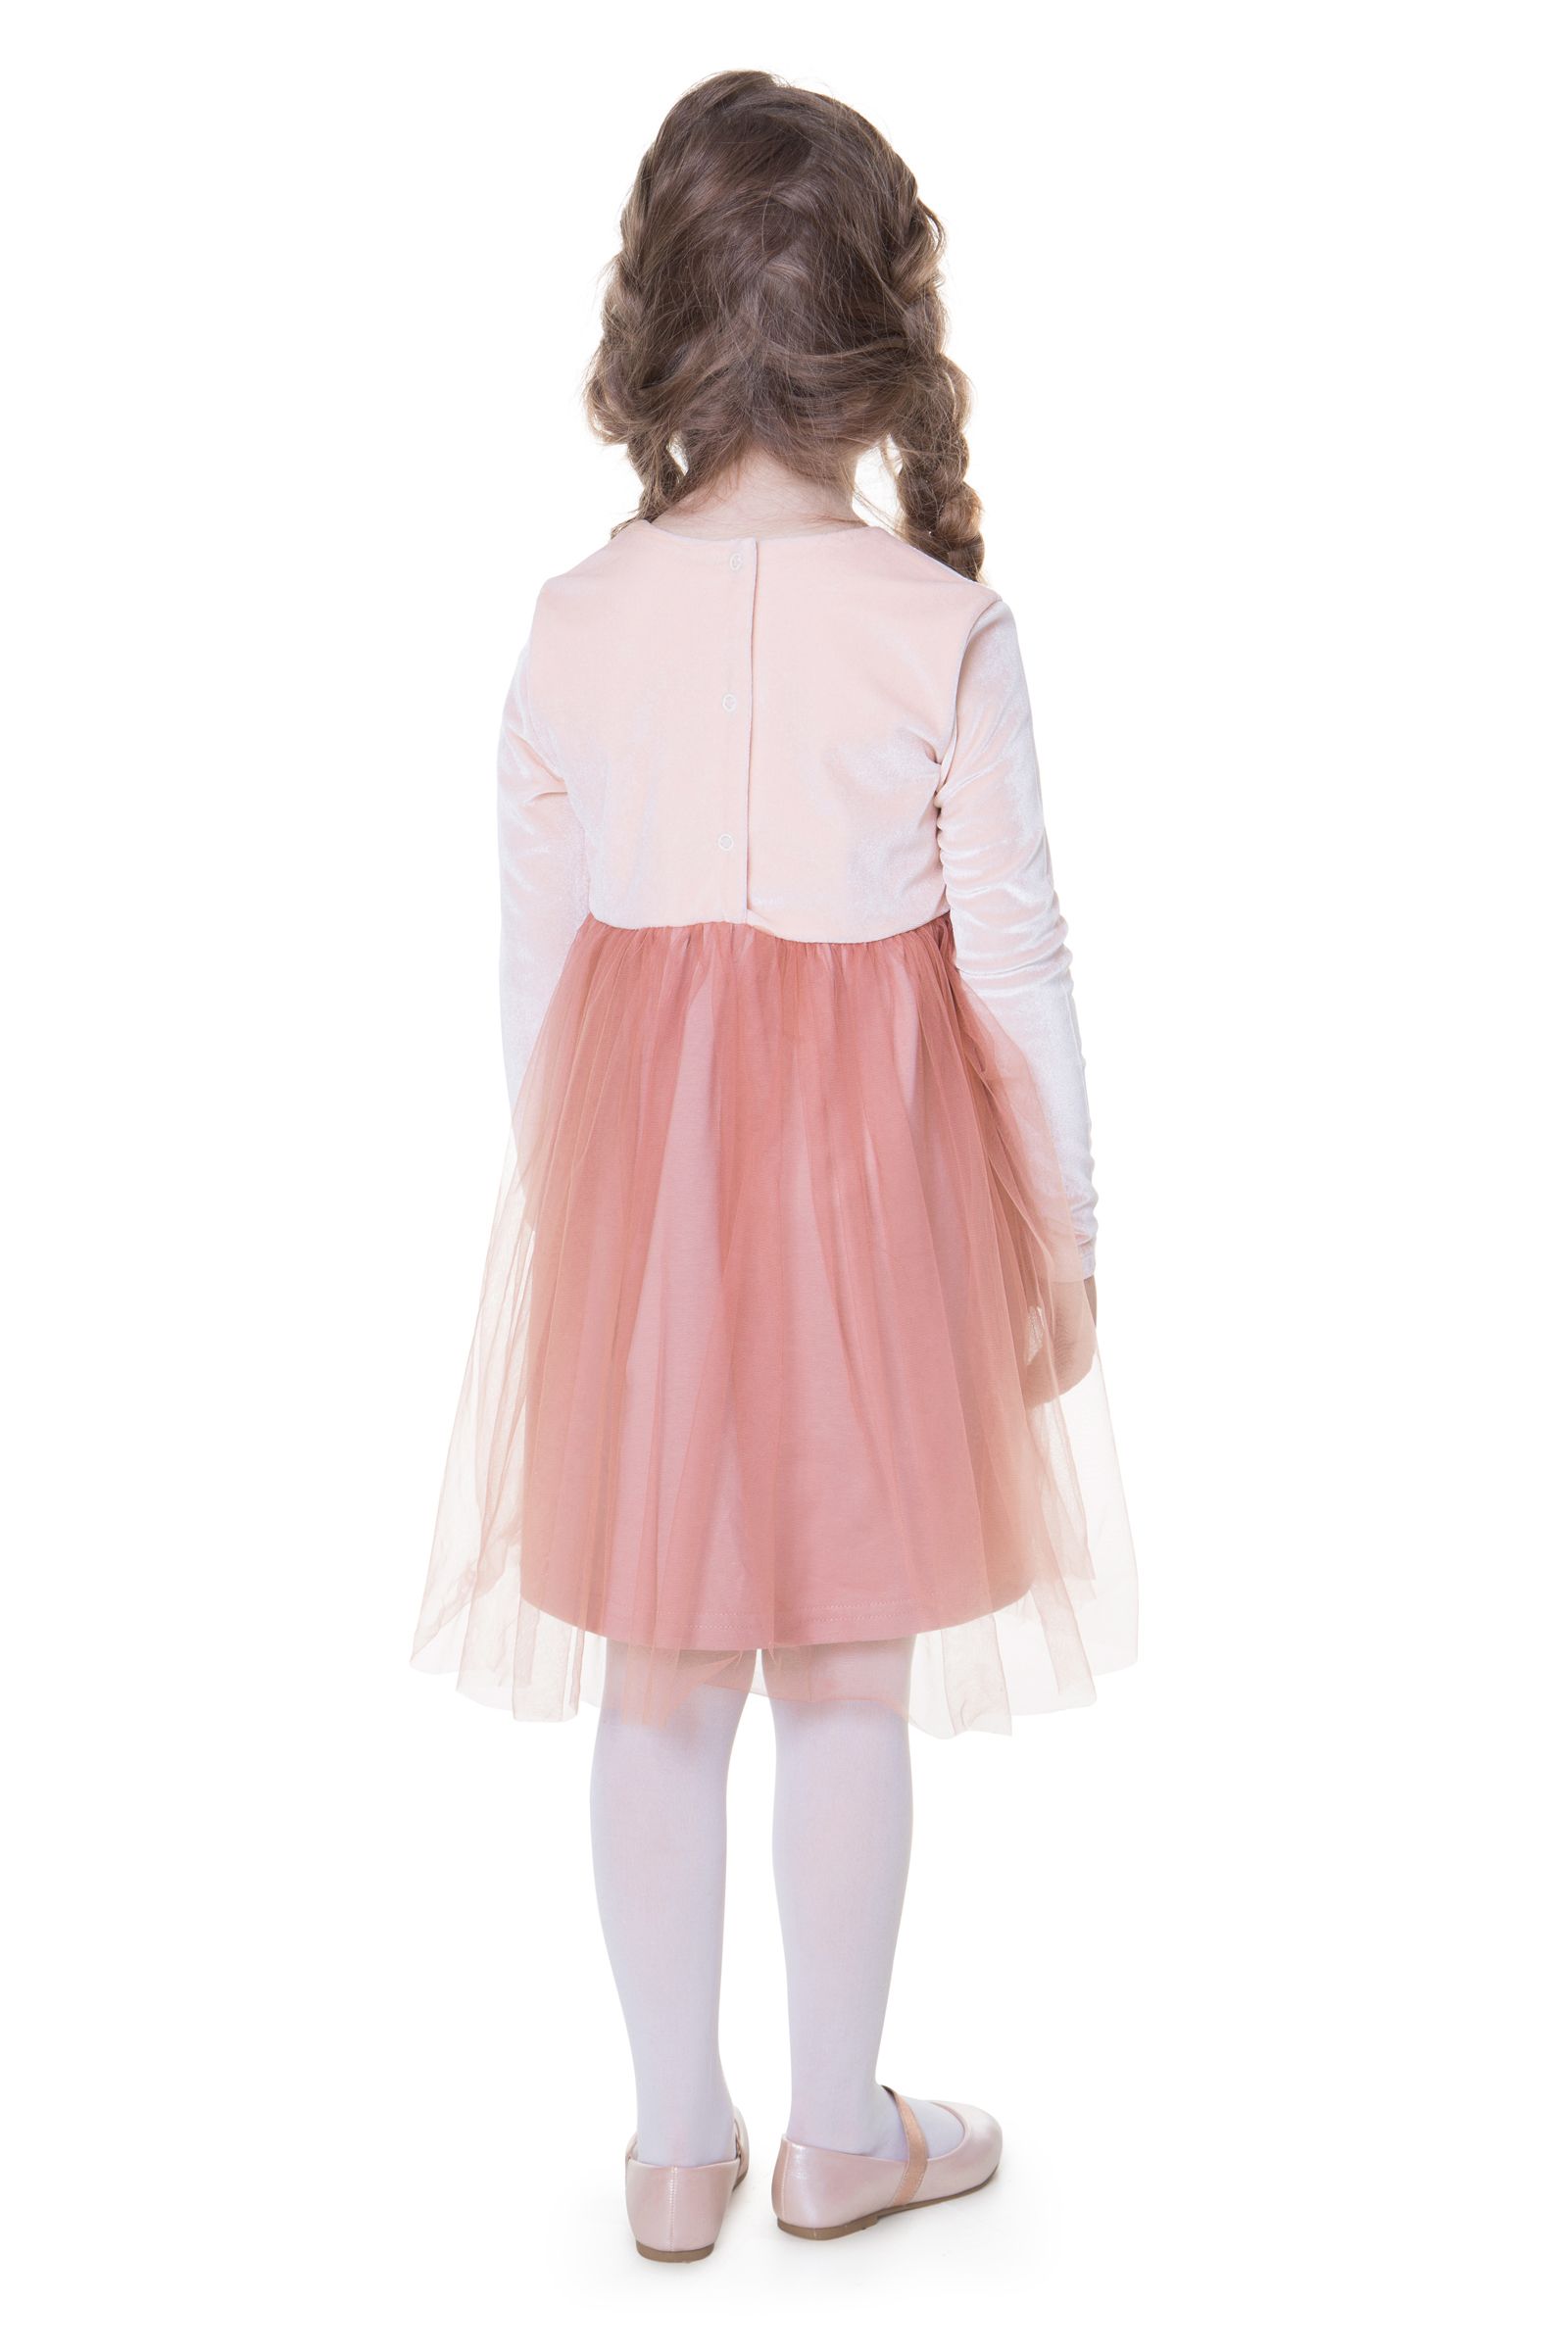 Платье-ПЛ04-3276 оптом от производителя детской одежды 'Алёна'